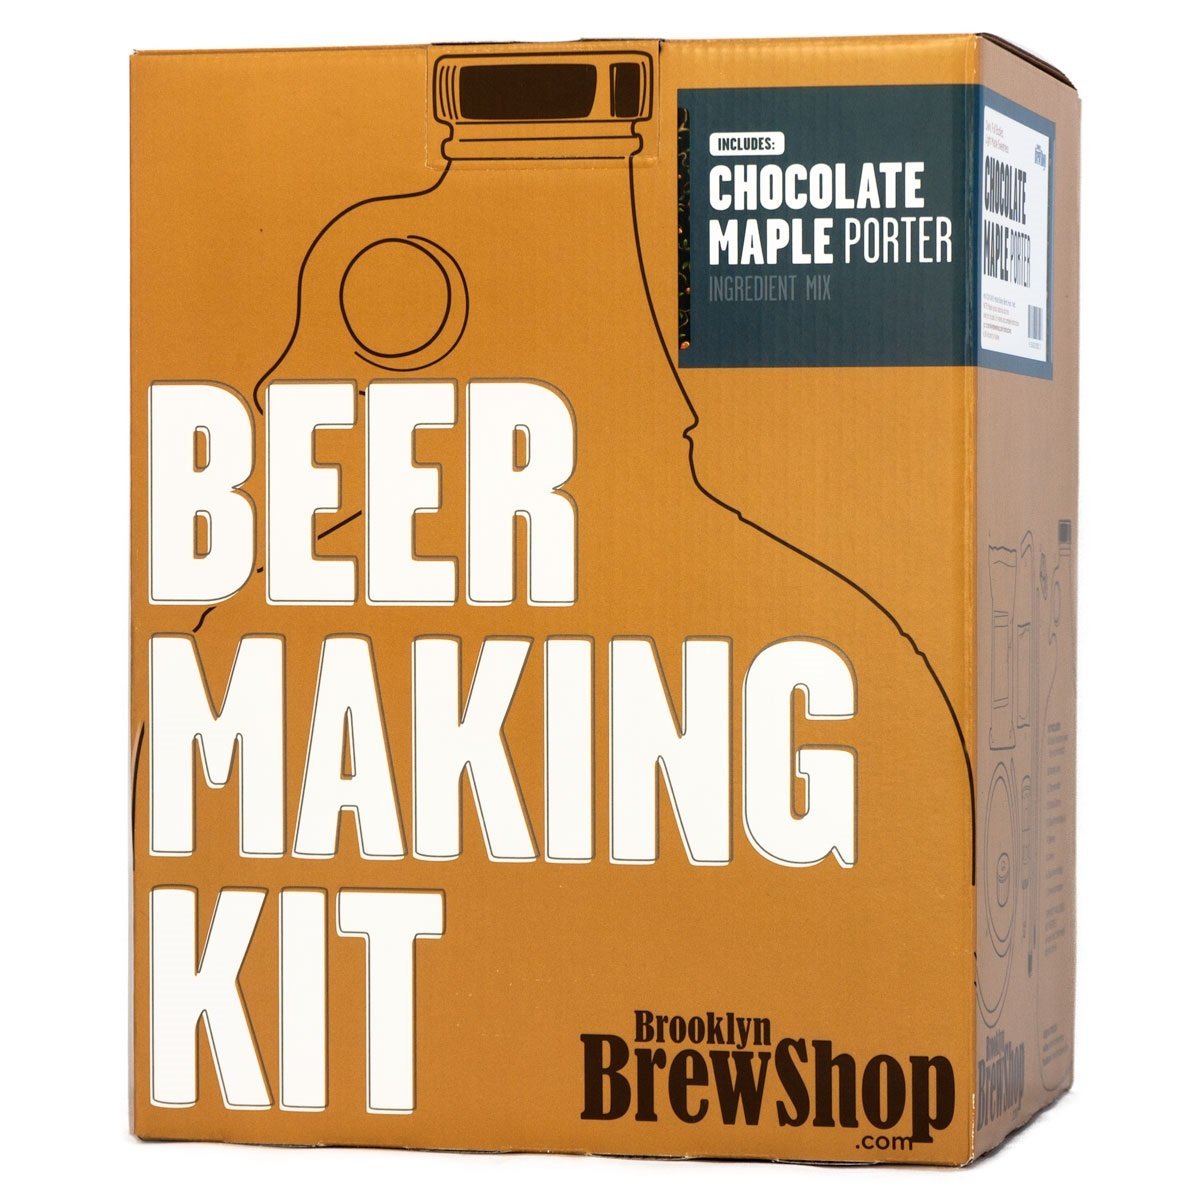 Brooklyn Brew Shop Kit, $39